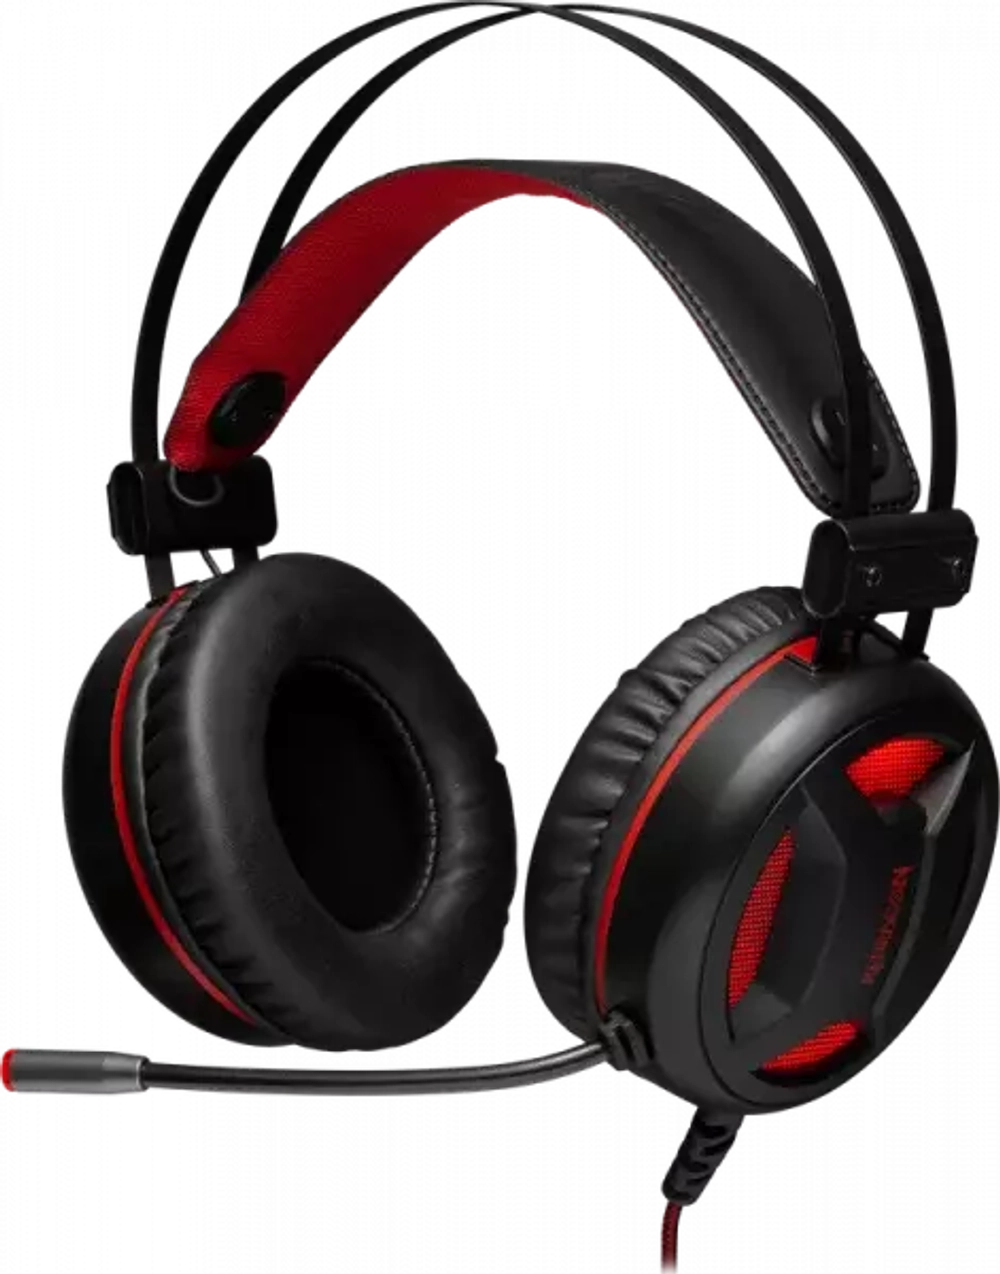 Игровая гарнитура стерео Redragon Minos virtual 7.1, красный + черный, подсветка, 2 м кабель